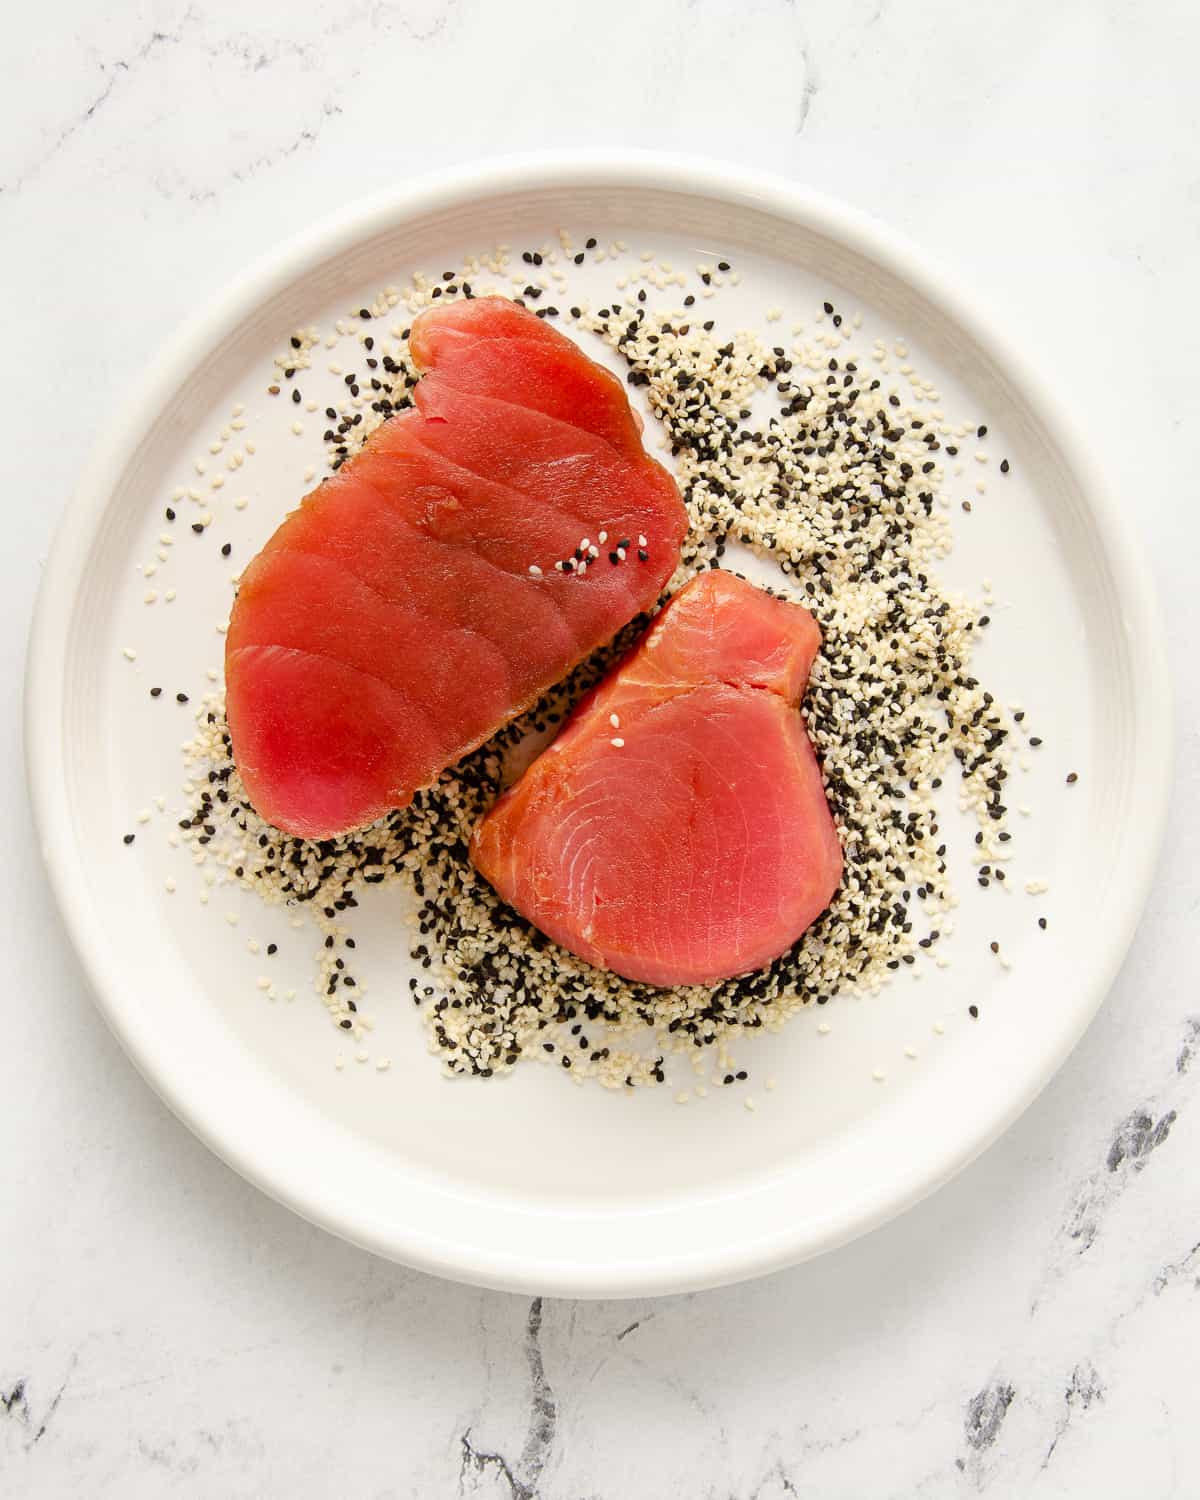 Raw ahi tuna in a white plate full of black and white sesame seeds.